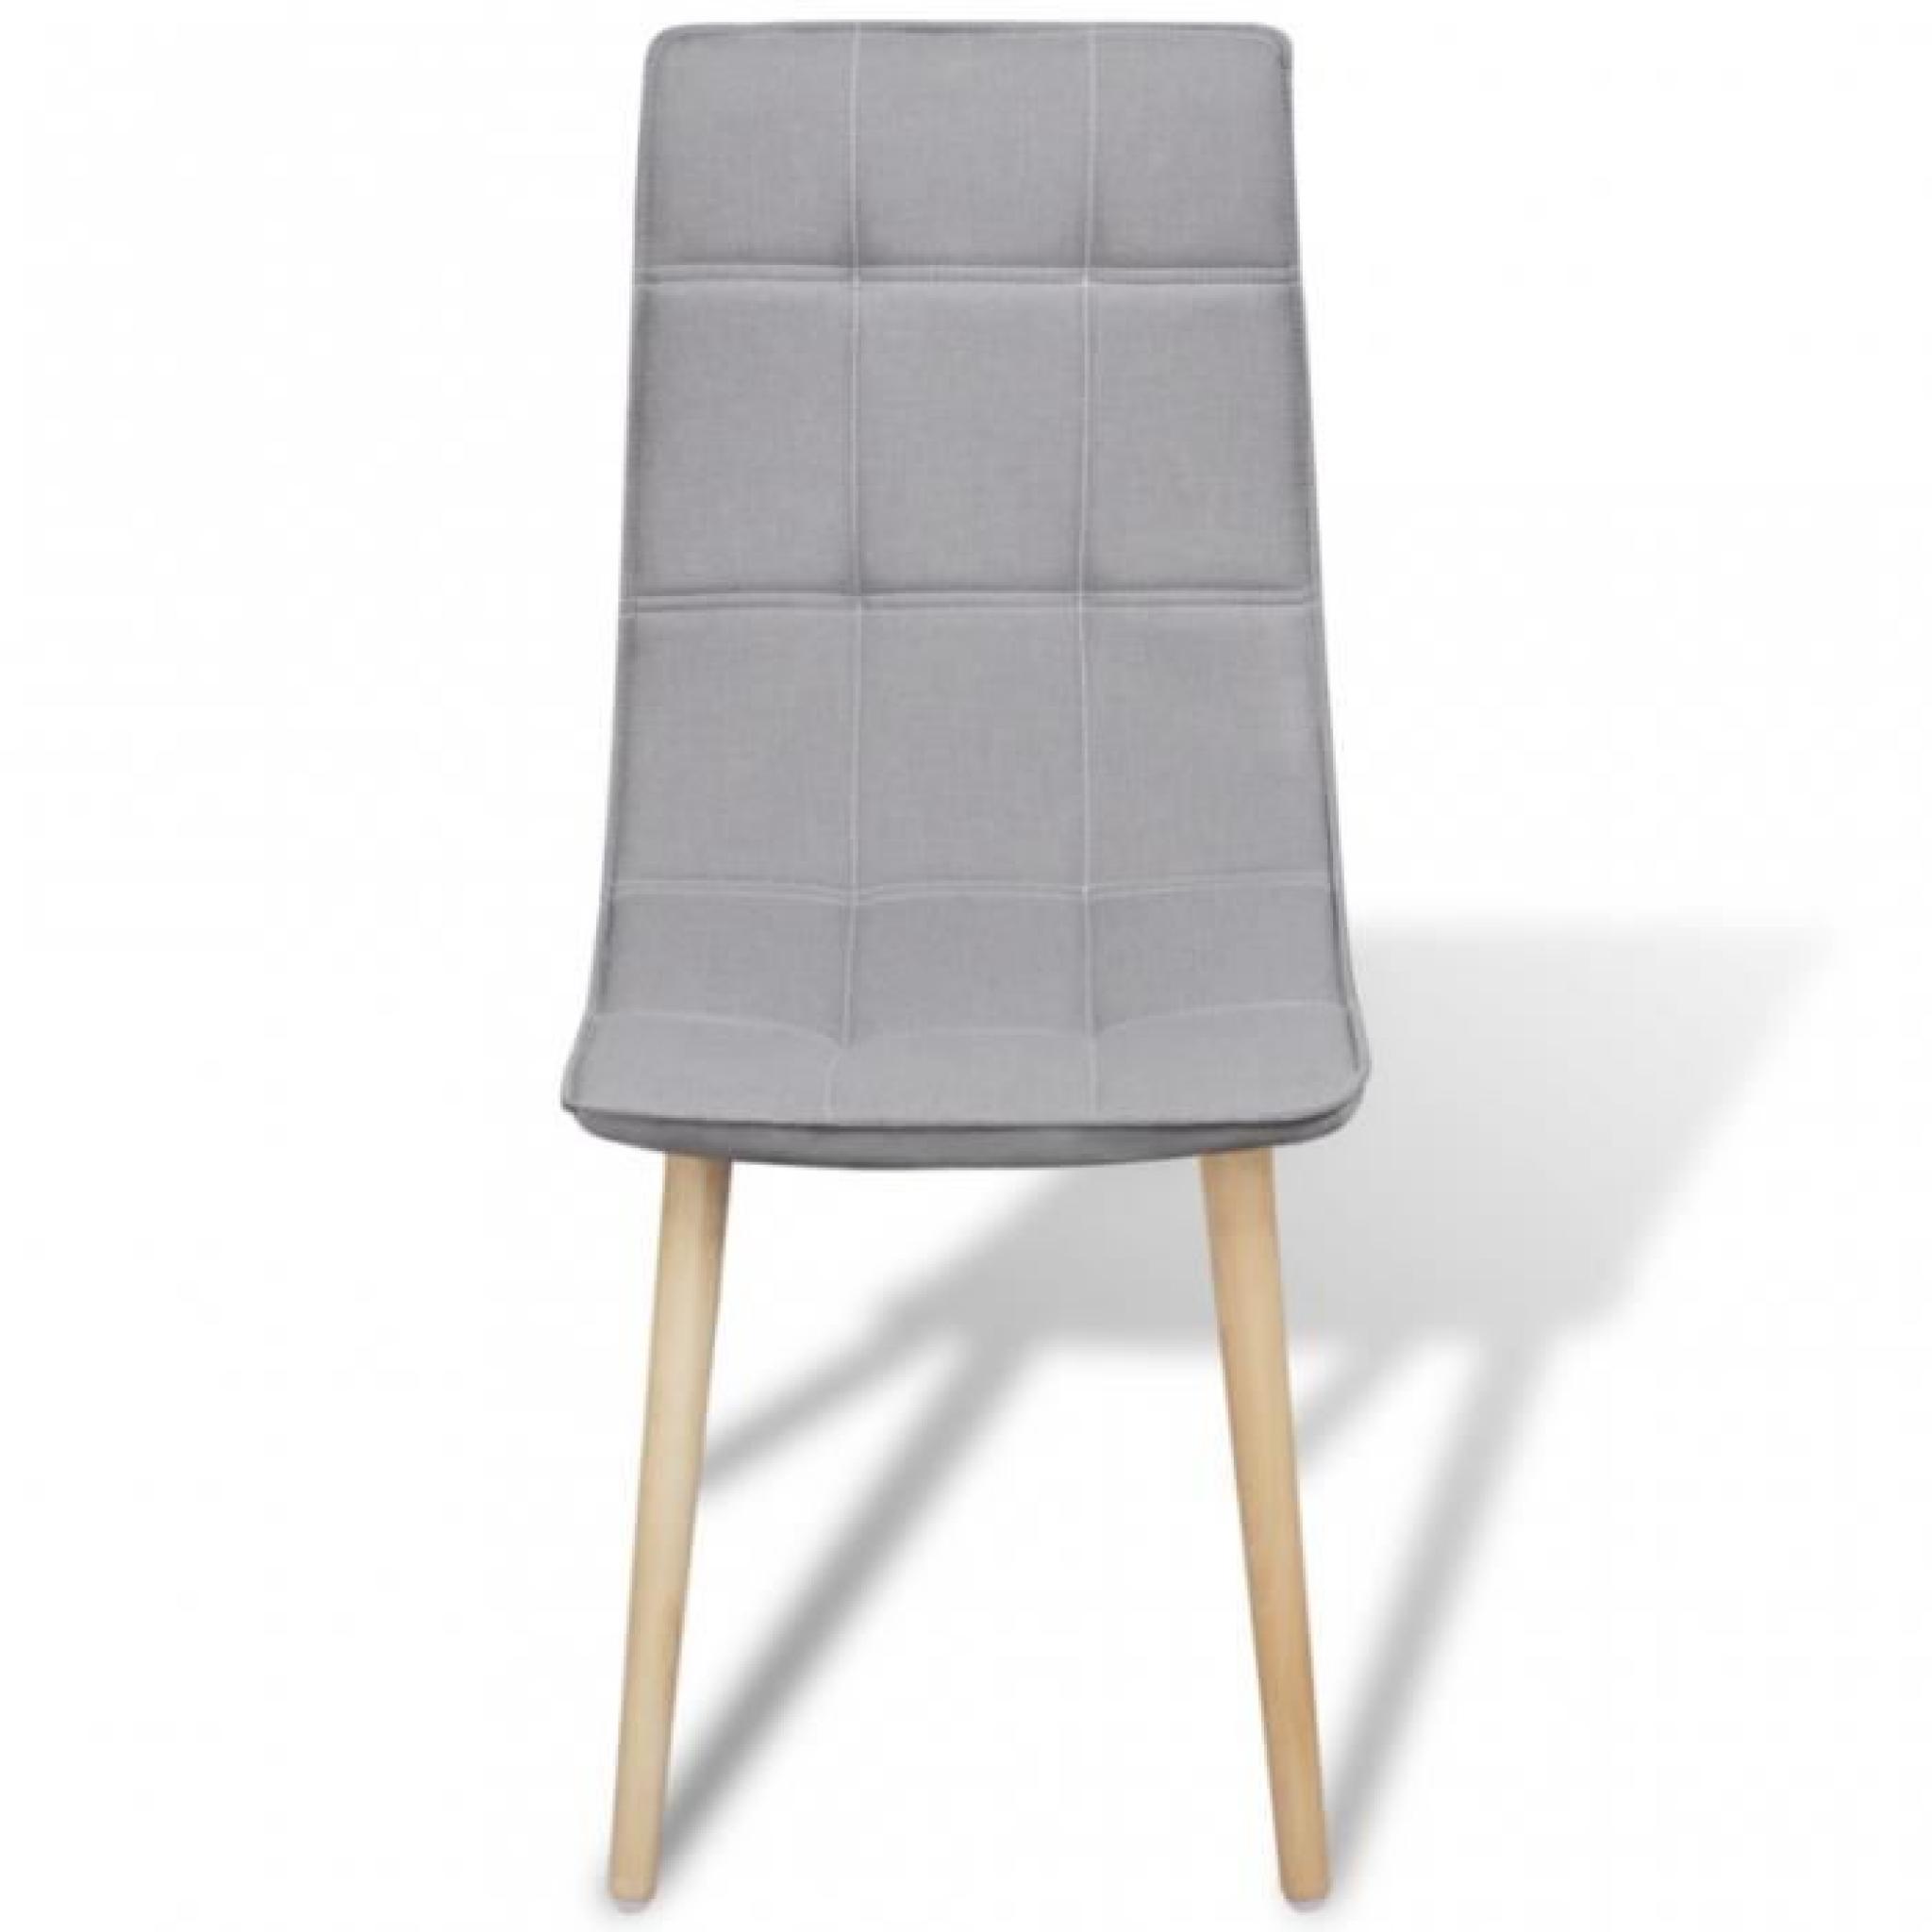 e set de chaises de salle à manger, d'un design ergonomique, apportera une touche confortable et élégante à votre maison. Avec ce... pas cher